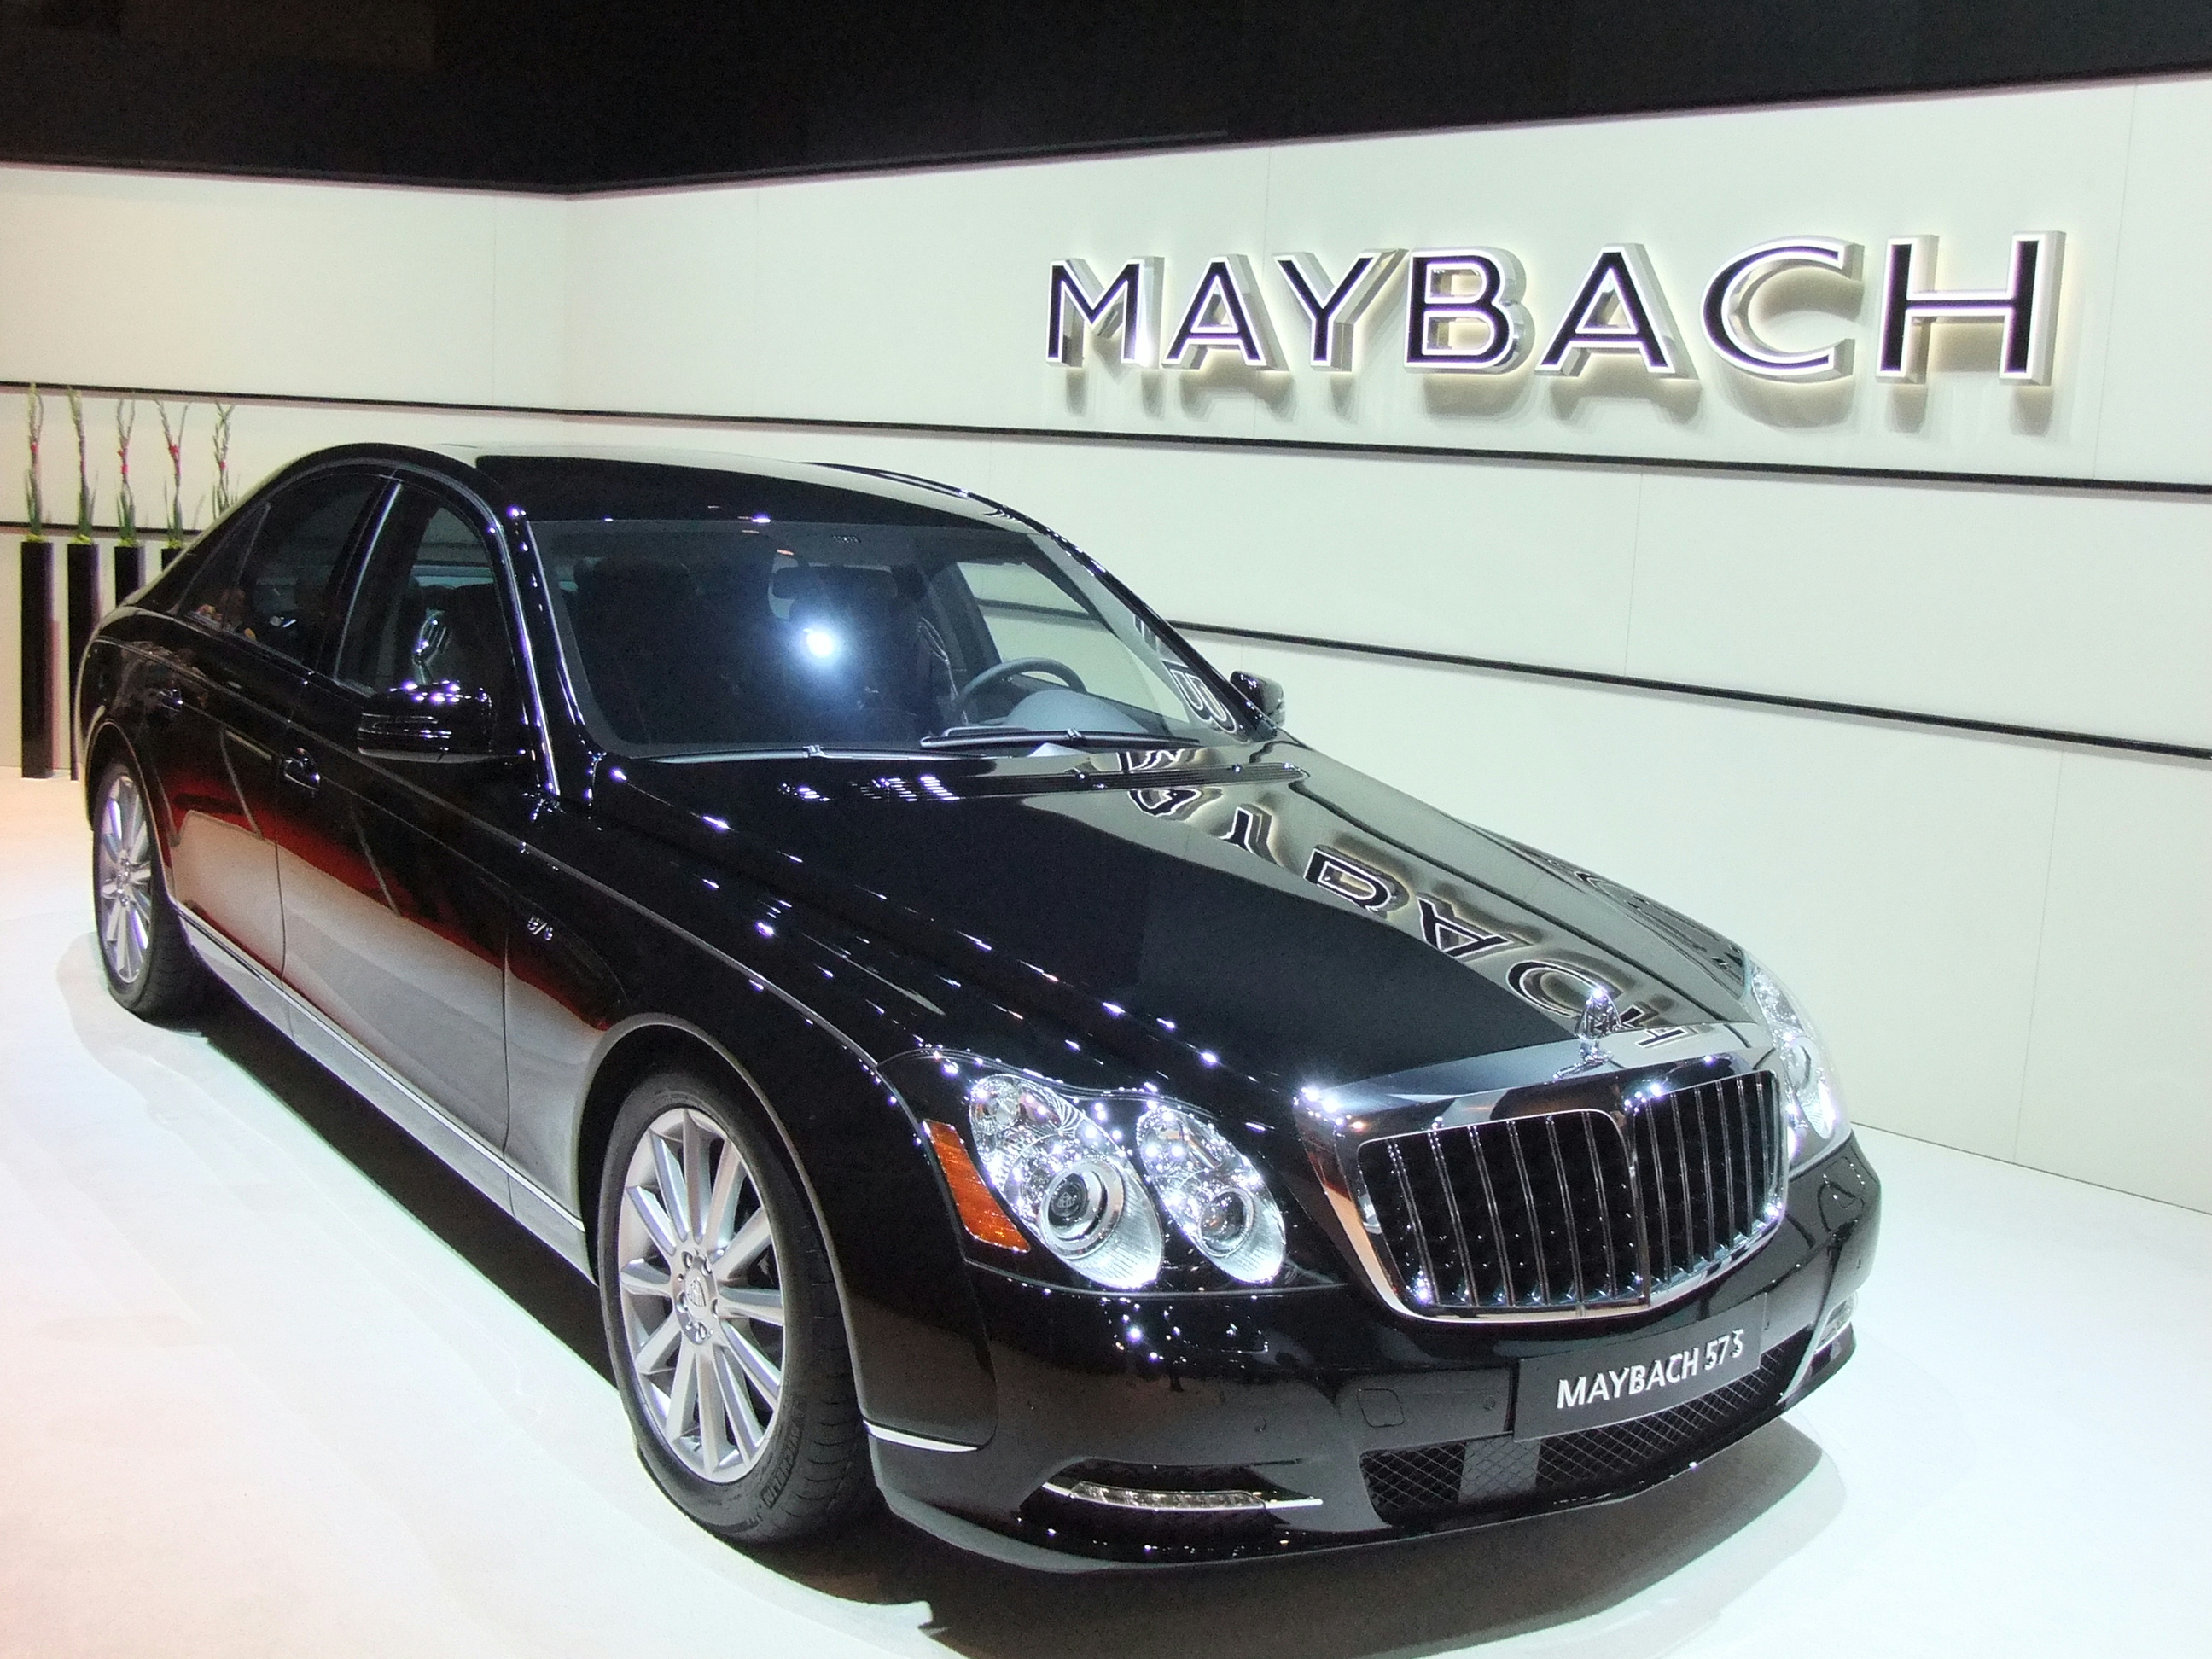 Maybach 57S, at tms2011